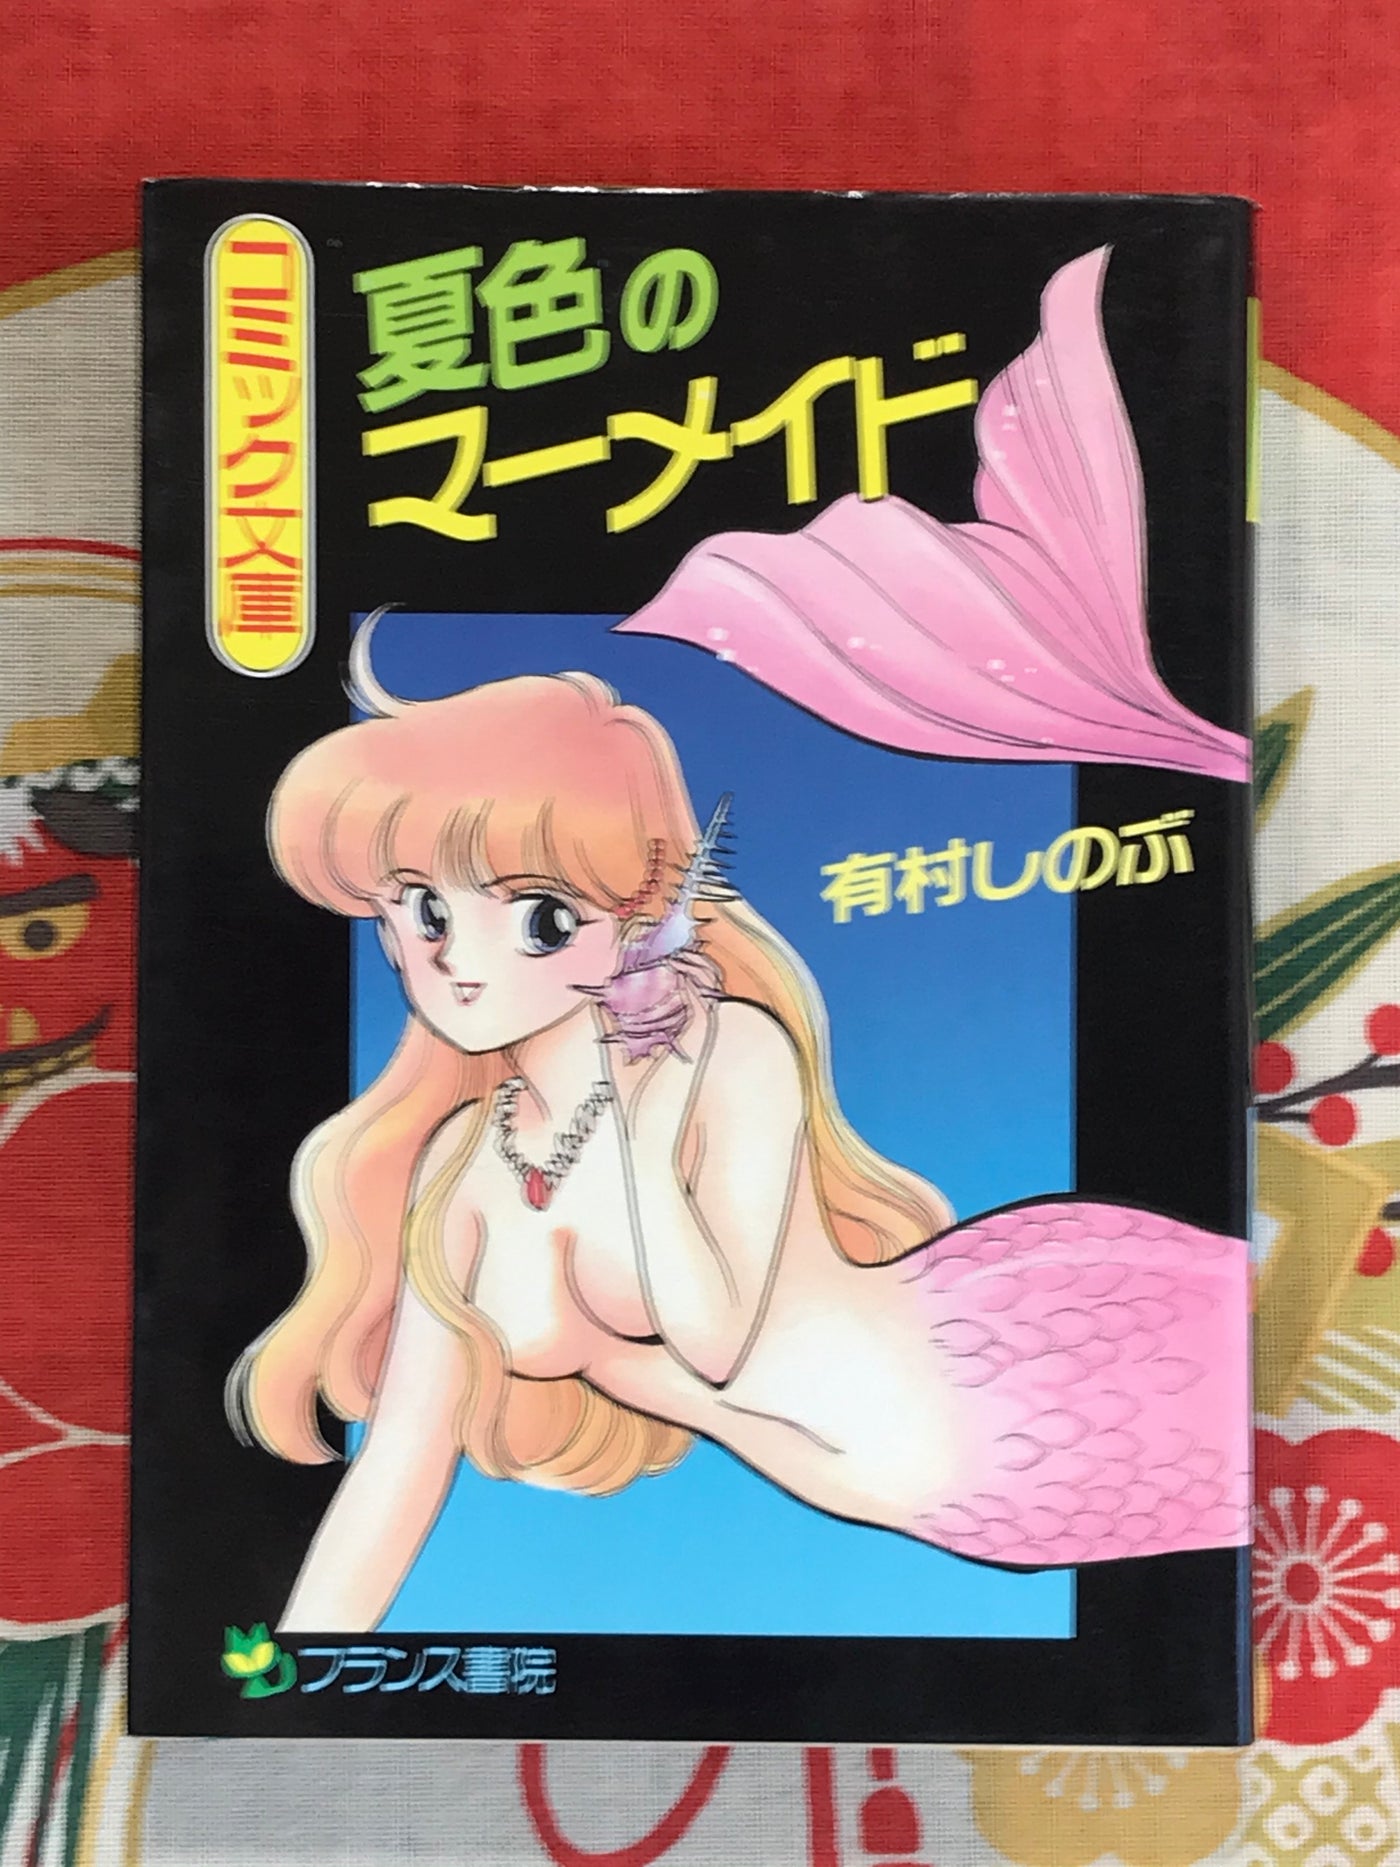 Summer Colored Mermaid bunko by Shinobu Arimura (1990)